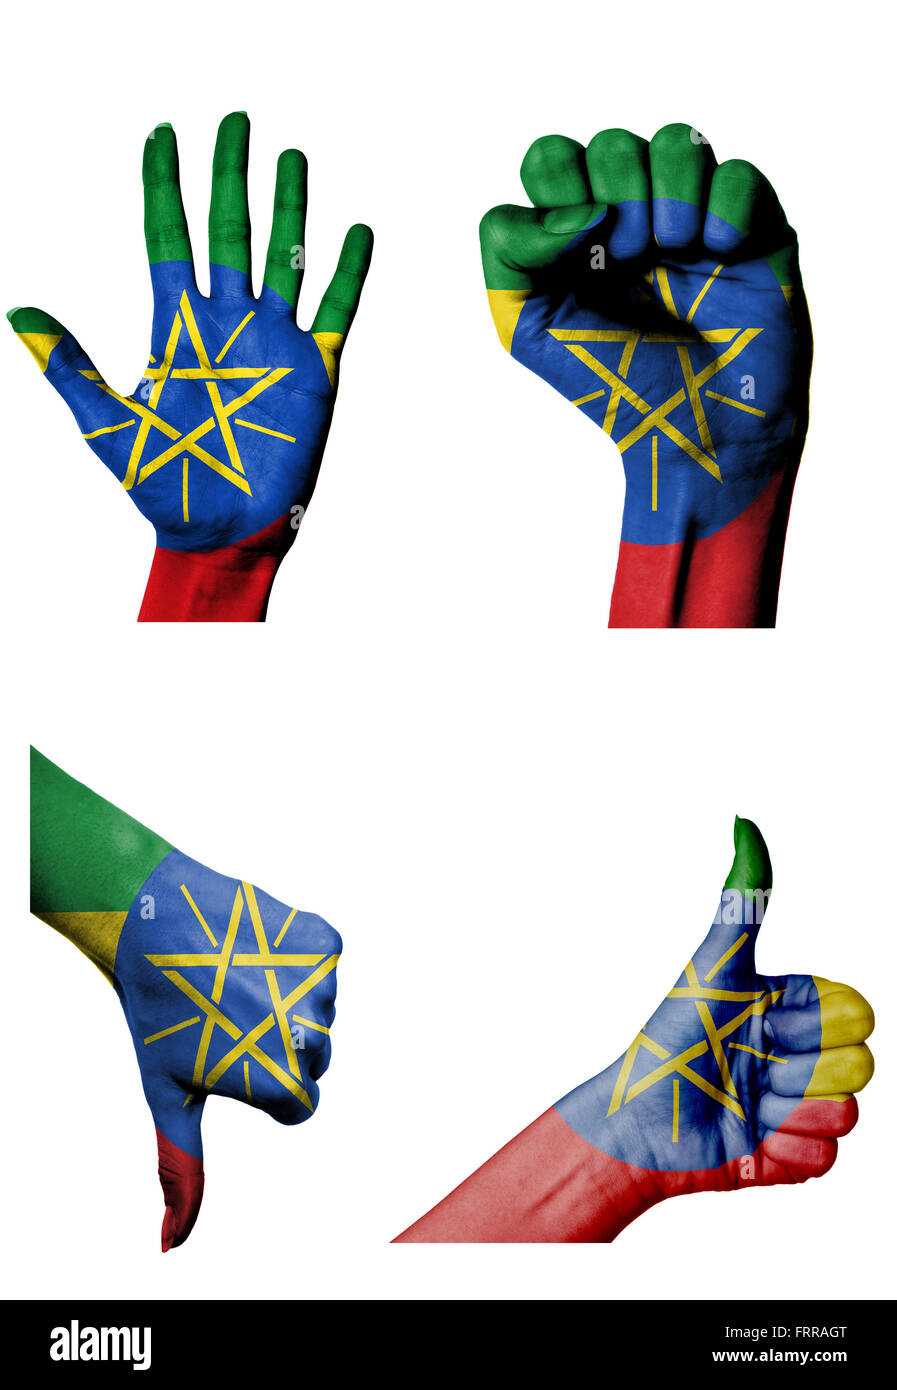 Les mains avec plusieurs gestes (poing fermé, paume ouverte, les pouces vers le haut et vers le bas) avec l'Éthiopie flag painted isolated on white Banque D'Images